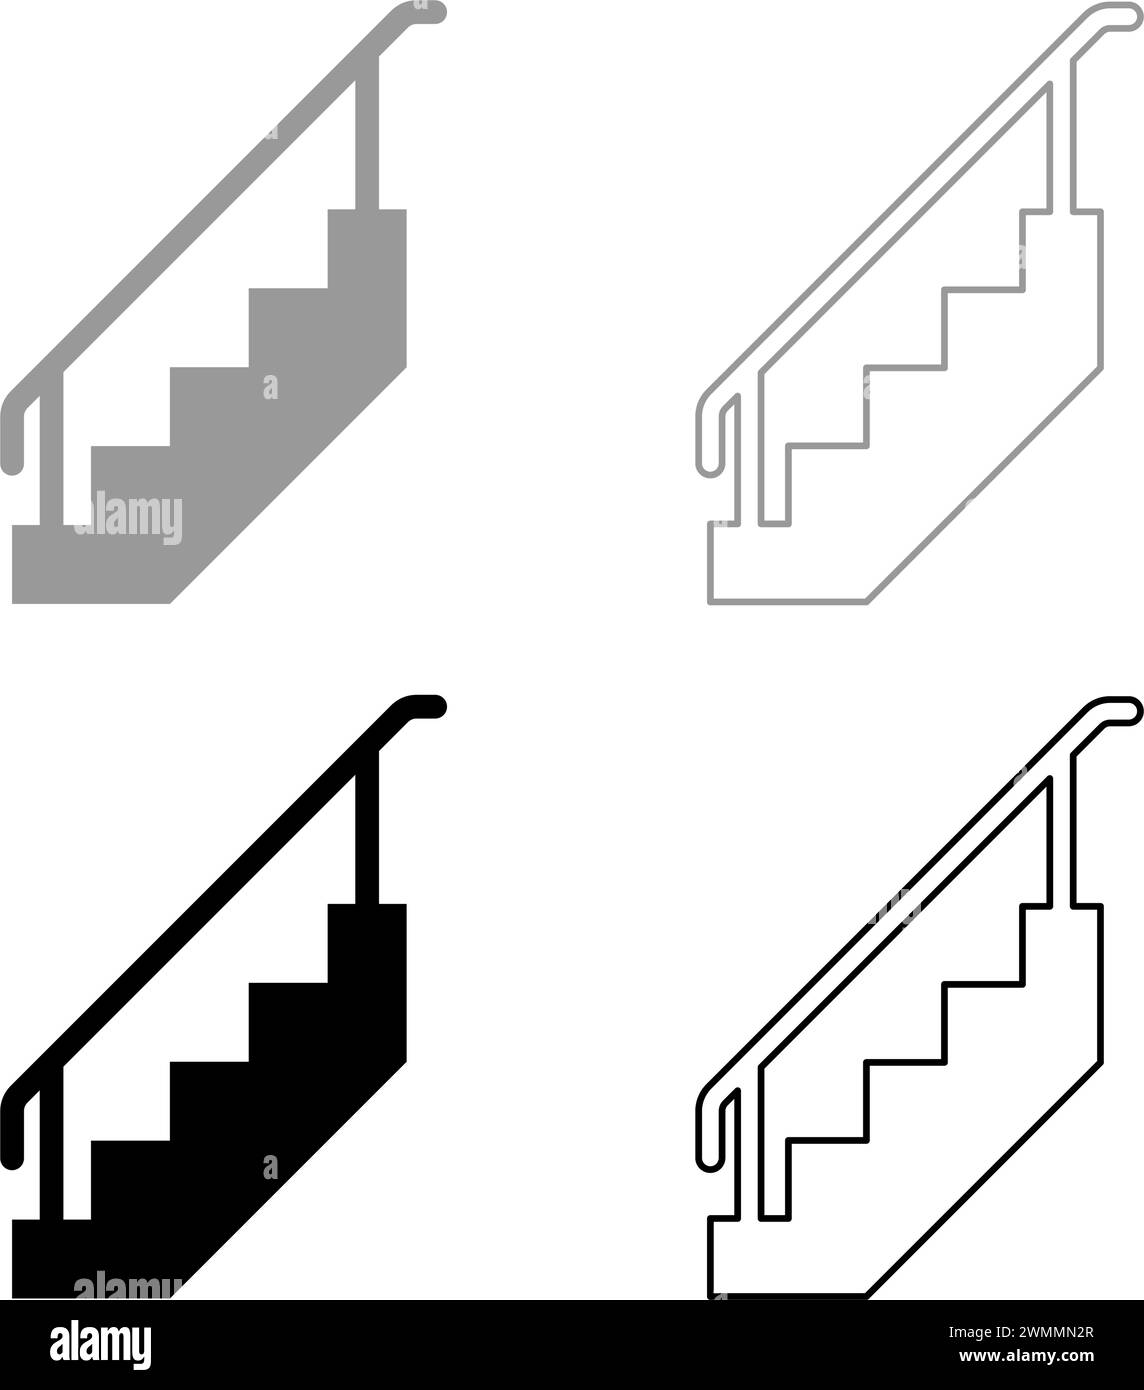 Treppe mit Geländer Treppe mit Handlauf Leiter Zaun Treppenhaus Set Icon grau schwarz Farbe Vektor Illustration Bild einfache feste Füllung Umriss Stock Vektor